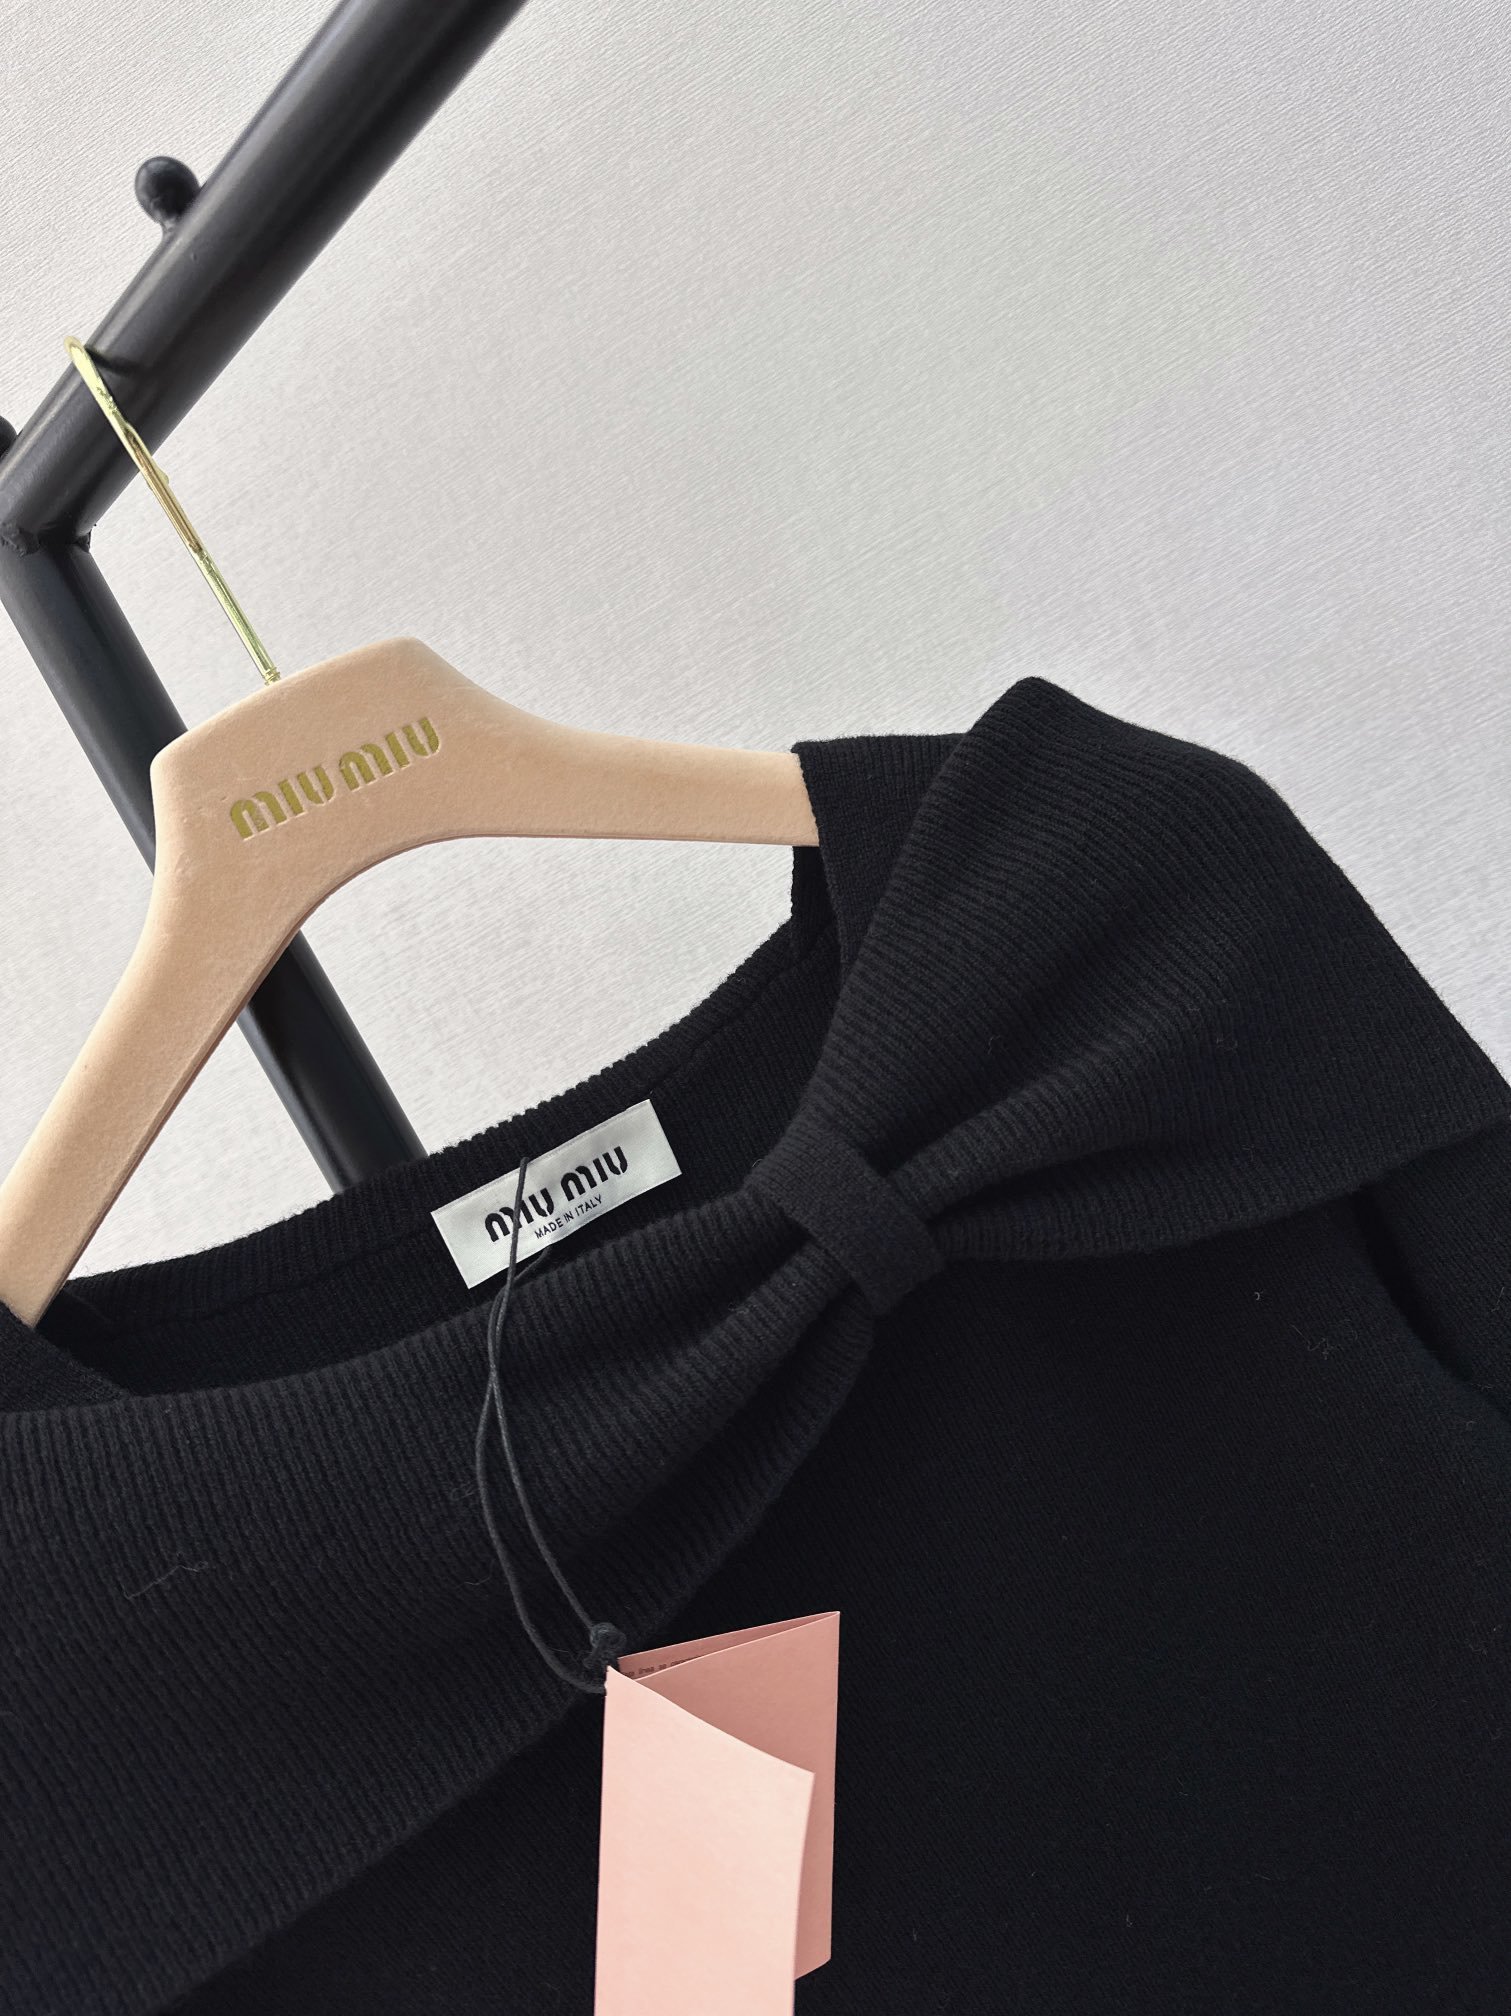 独家首发Miu24Ss早春最新款最美一字肩针织上衣️非常精致有女人味的设计露锁骨C位出镜的最佳方式修身的